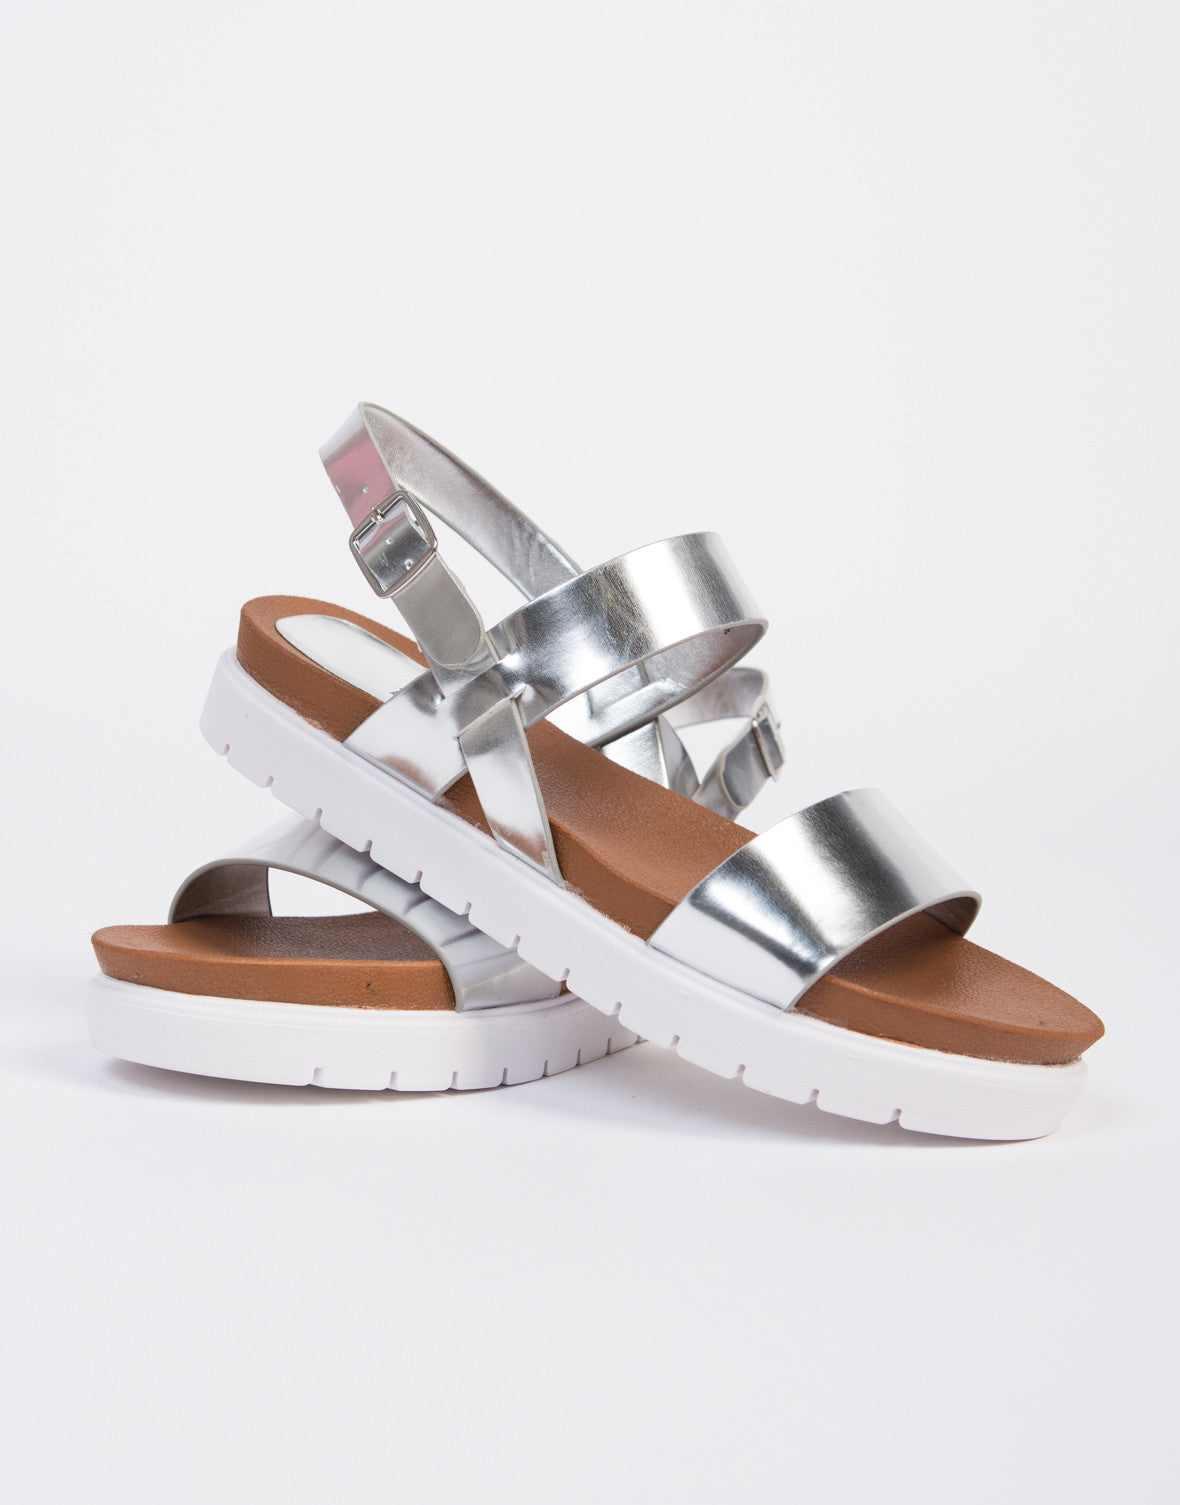 Double Banded Platform Sandals - Silver Flatform Sandals – 2020AVE